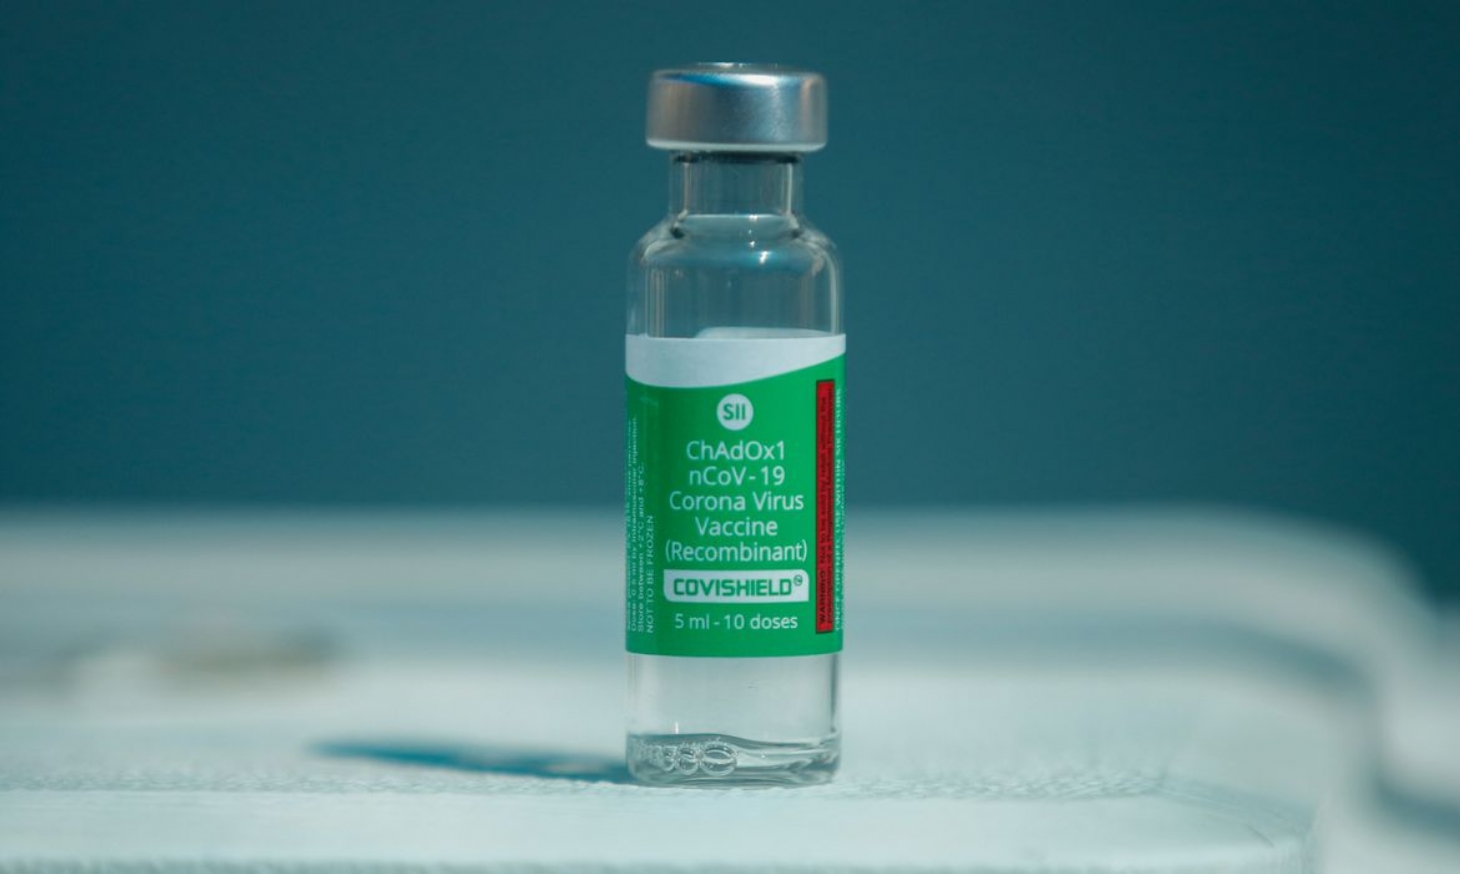 Índia envia 2 milhões de doses de vacinas contra a Covid-19 ao Brasil | Jornal da Orla